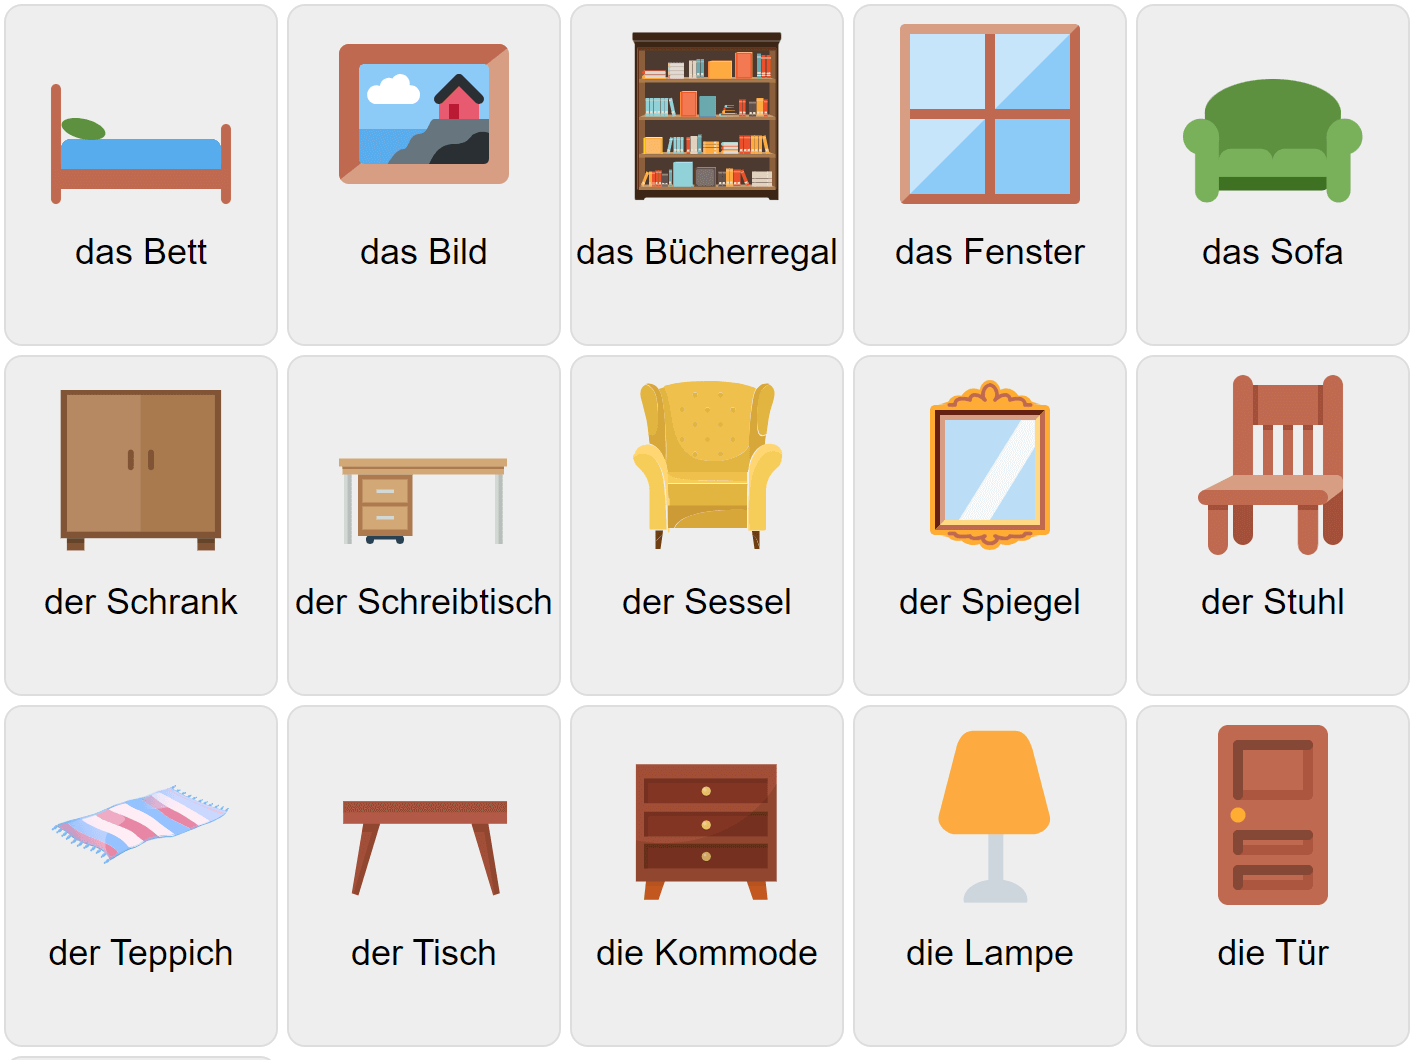 Мебель на немецком языке